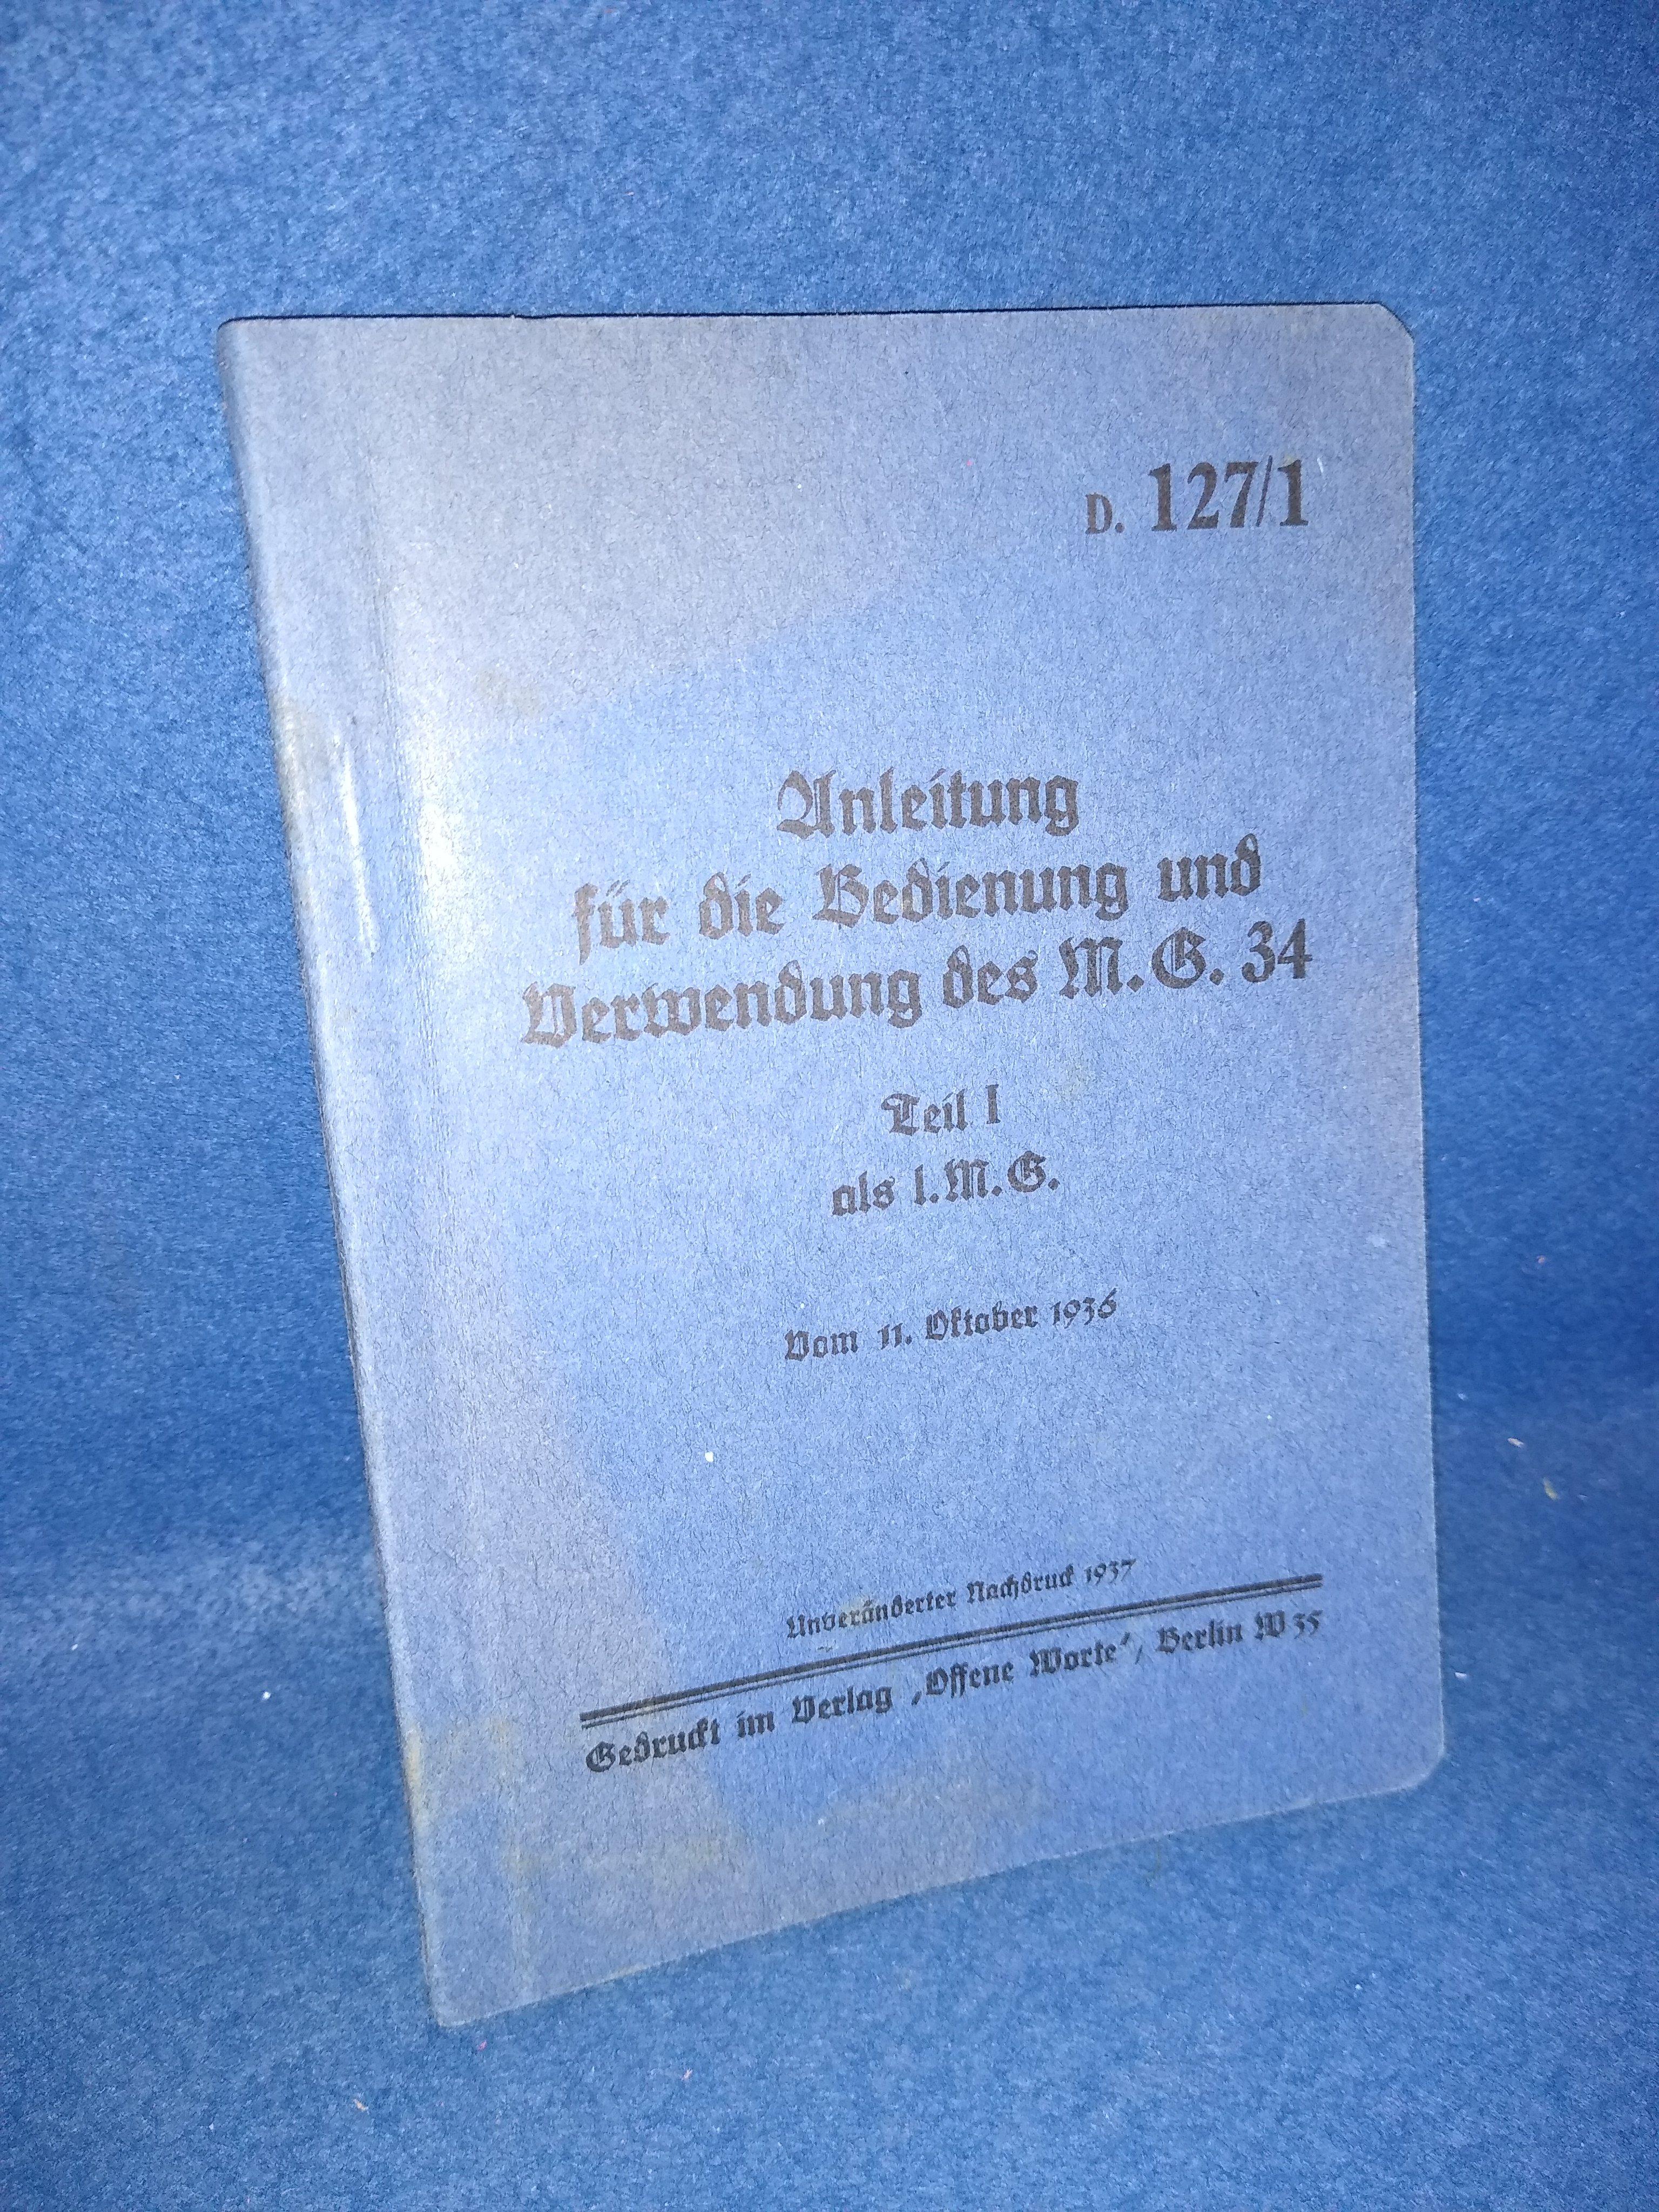 D 127/1 Anleitung für die Bedienung und Verwendung des M.G.34, Teil I als l. M.G. Seltenes Orginal!